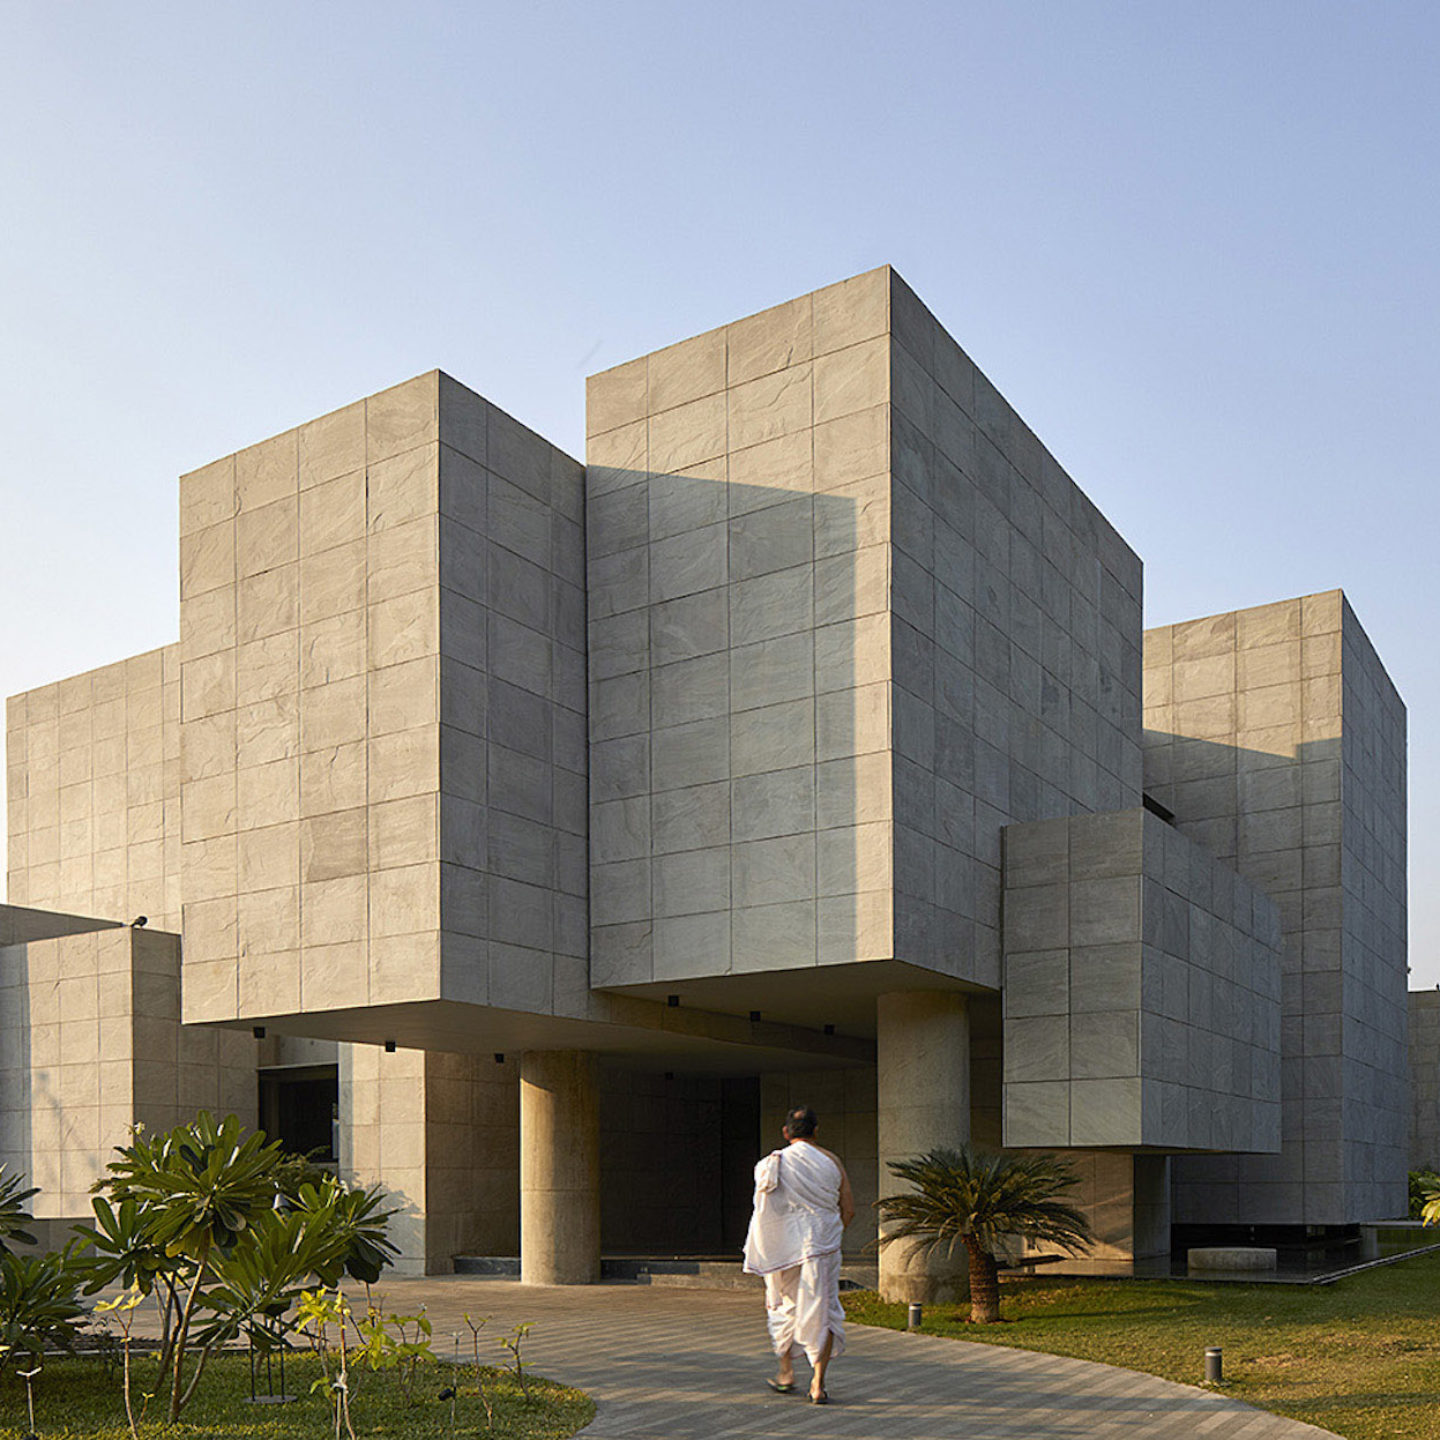 iGNANT-Architecture-Matharoo-Architects-Ahmedabad-House-02